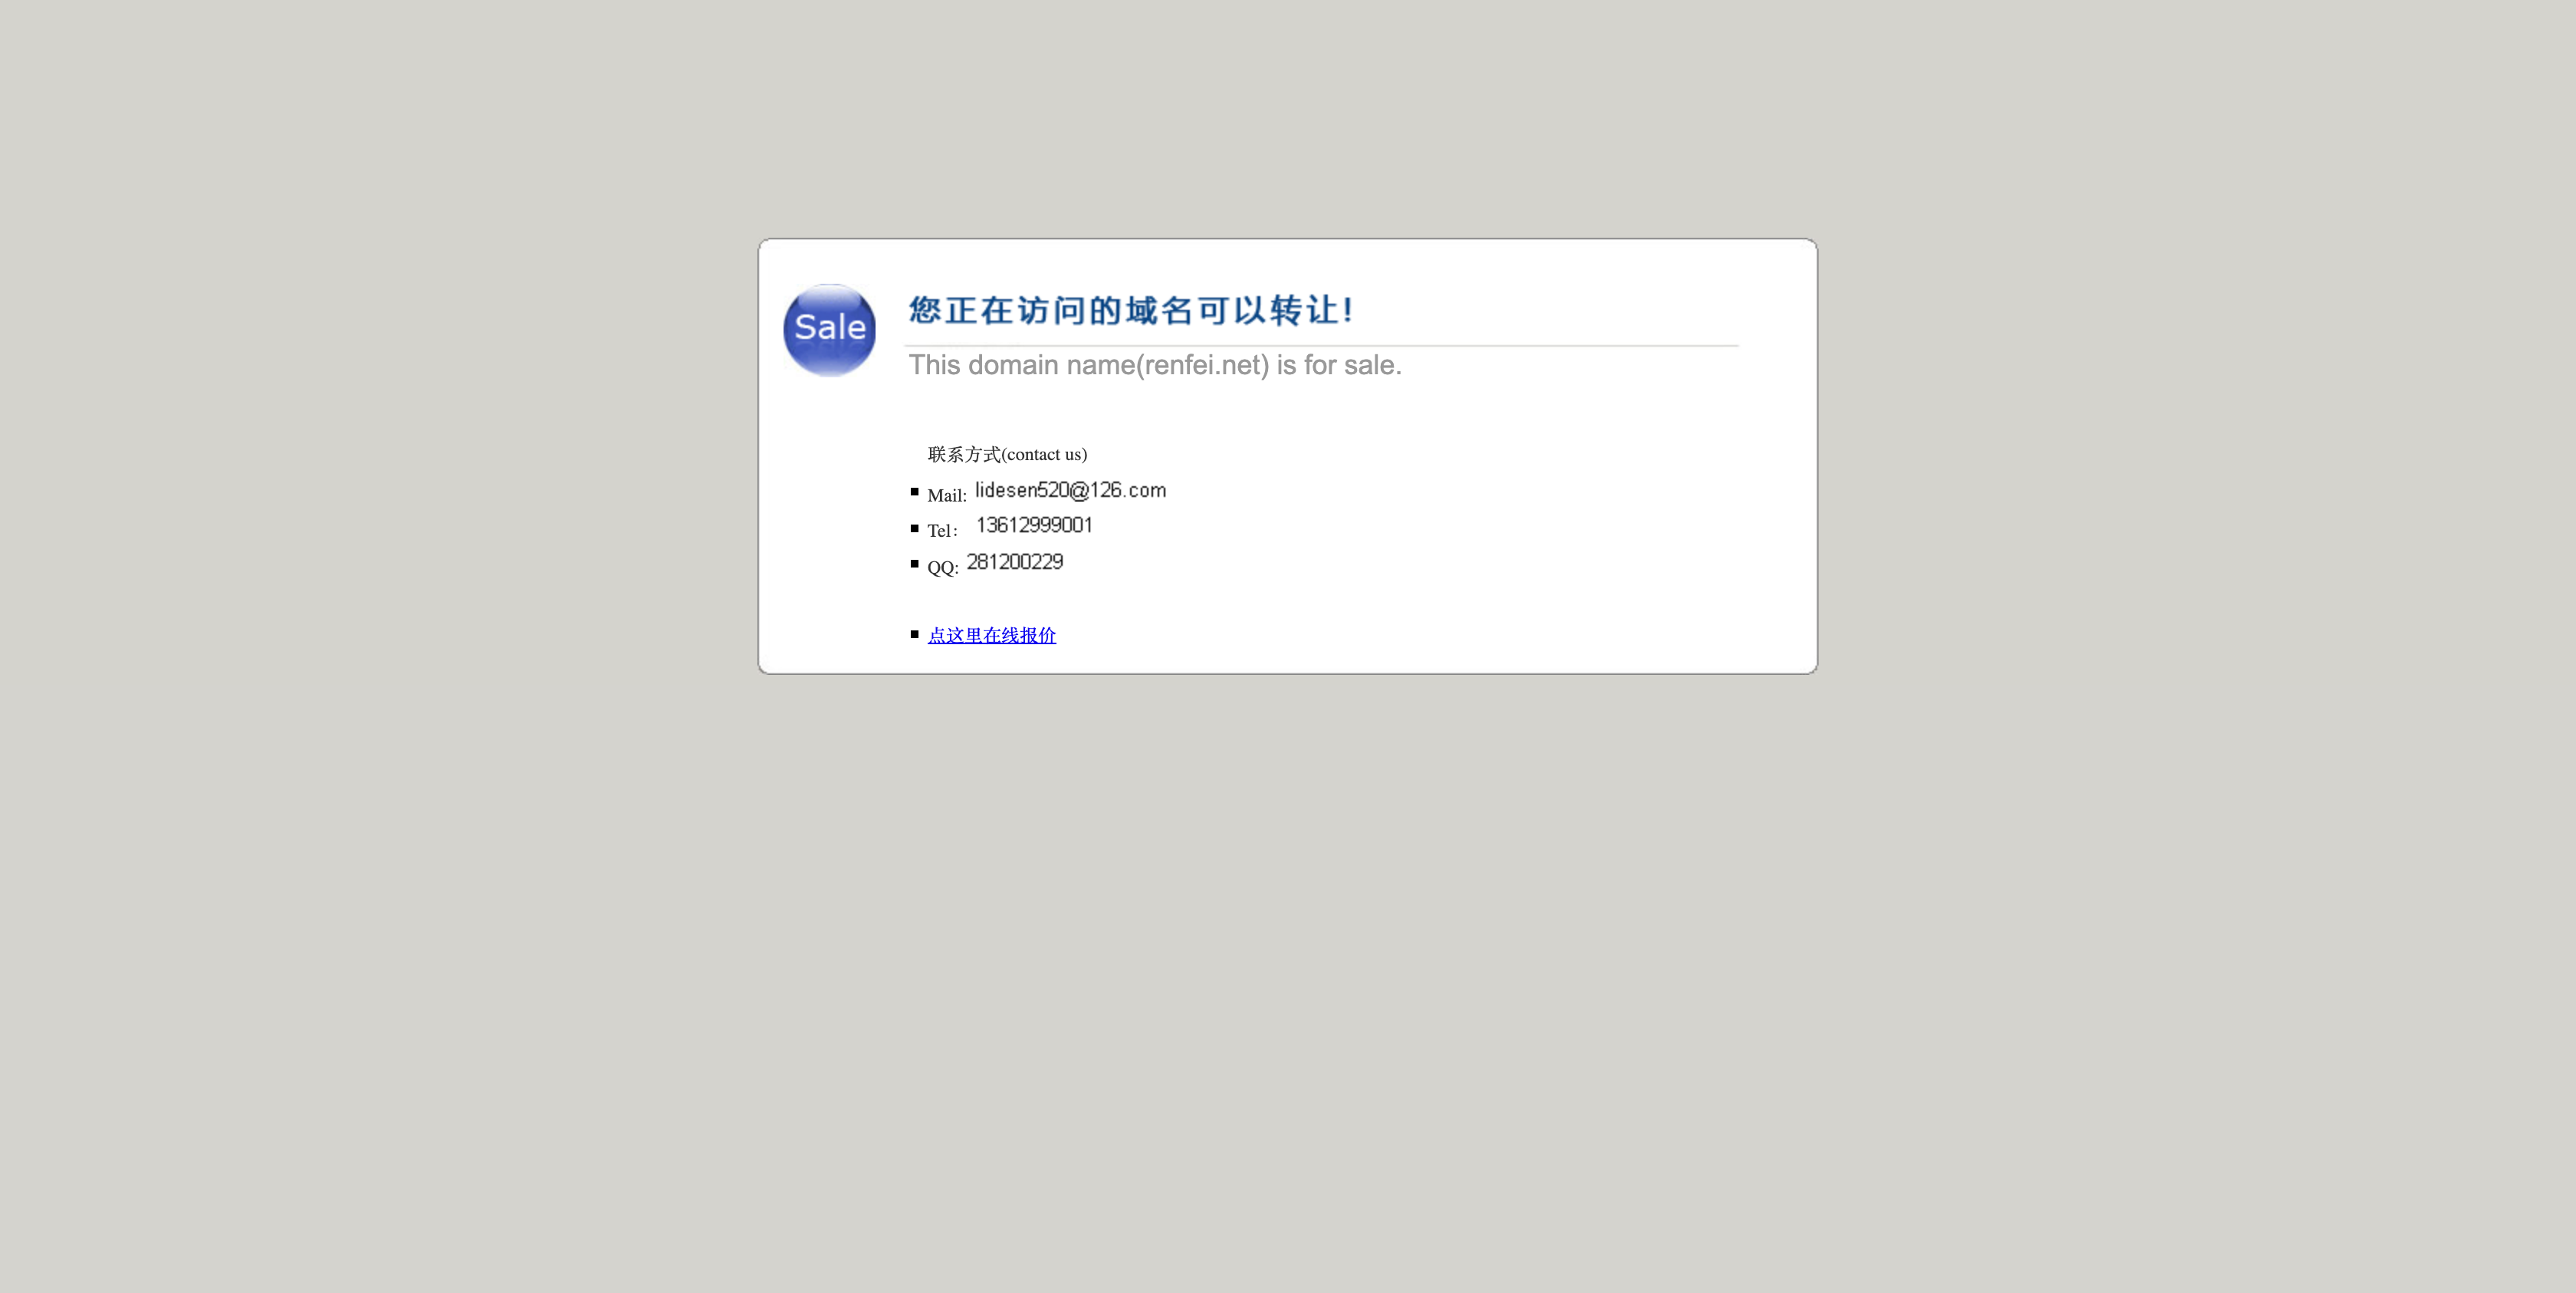 renfei.net在2014年的首页